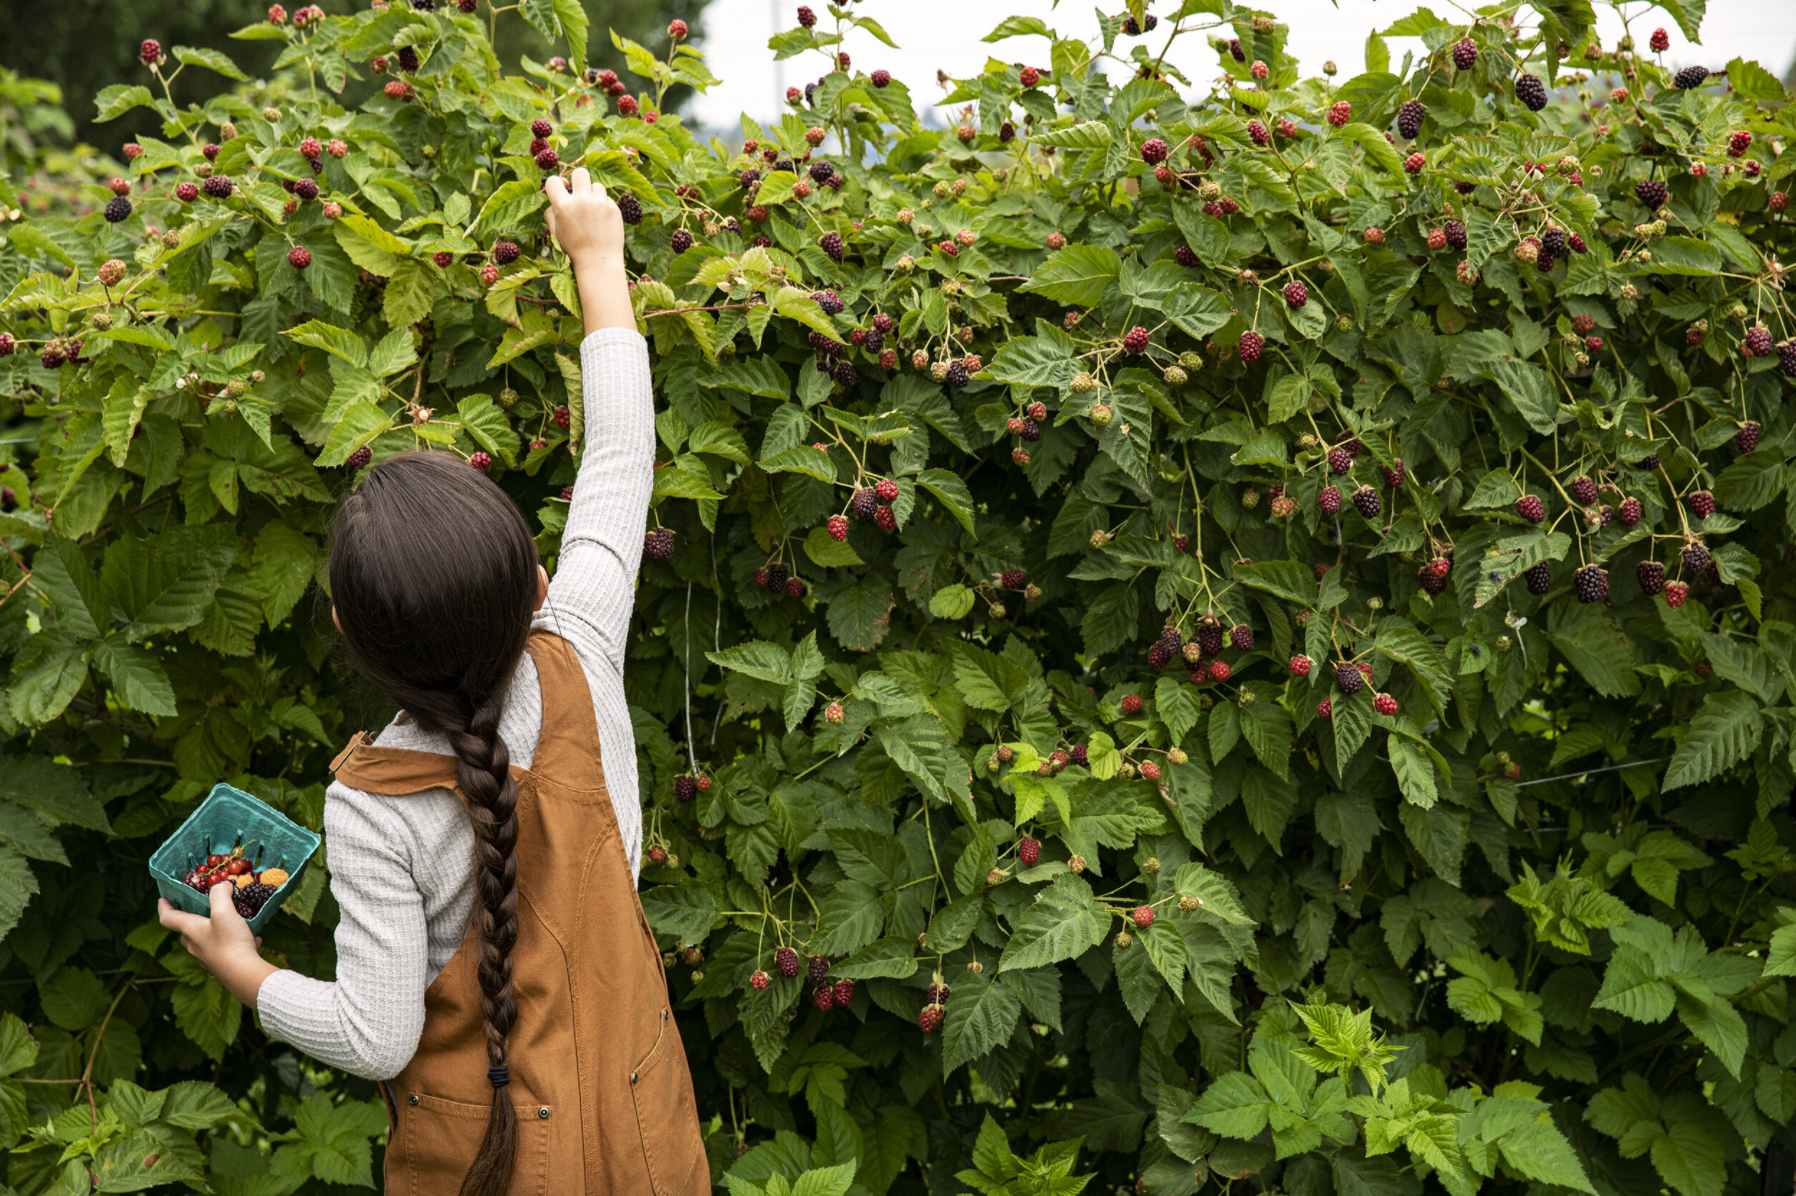 Picking raspberries in the Skagit Valley_Photo: Charity Burggraaf